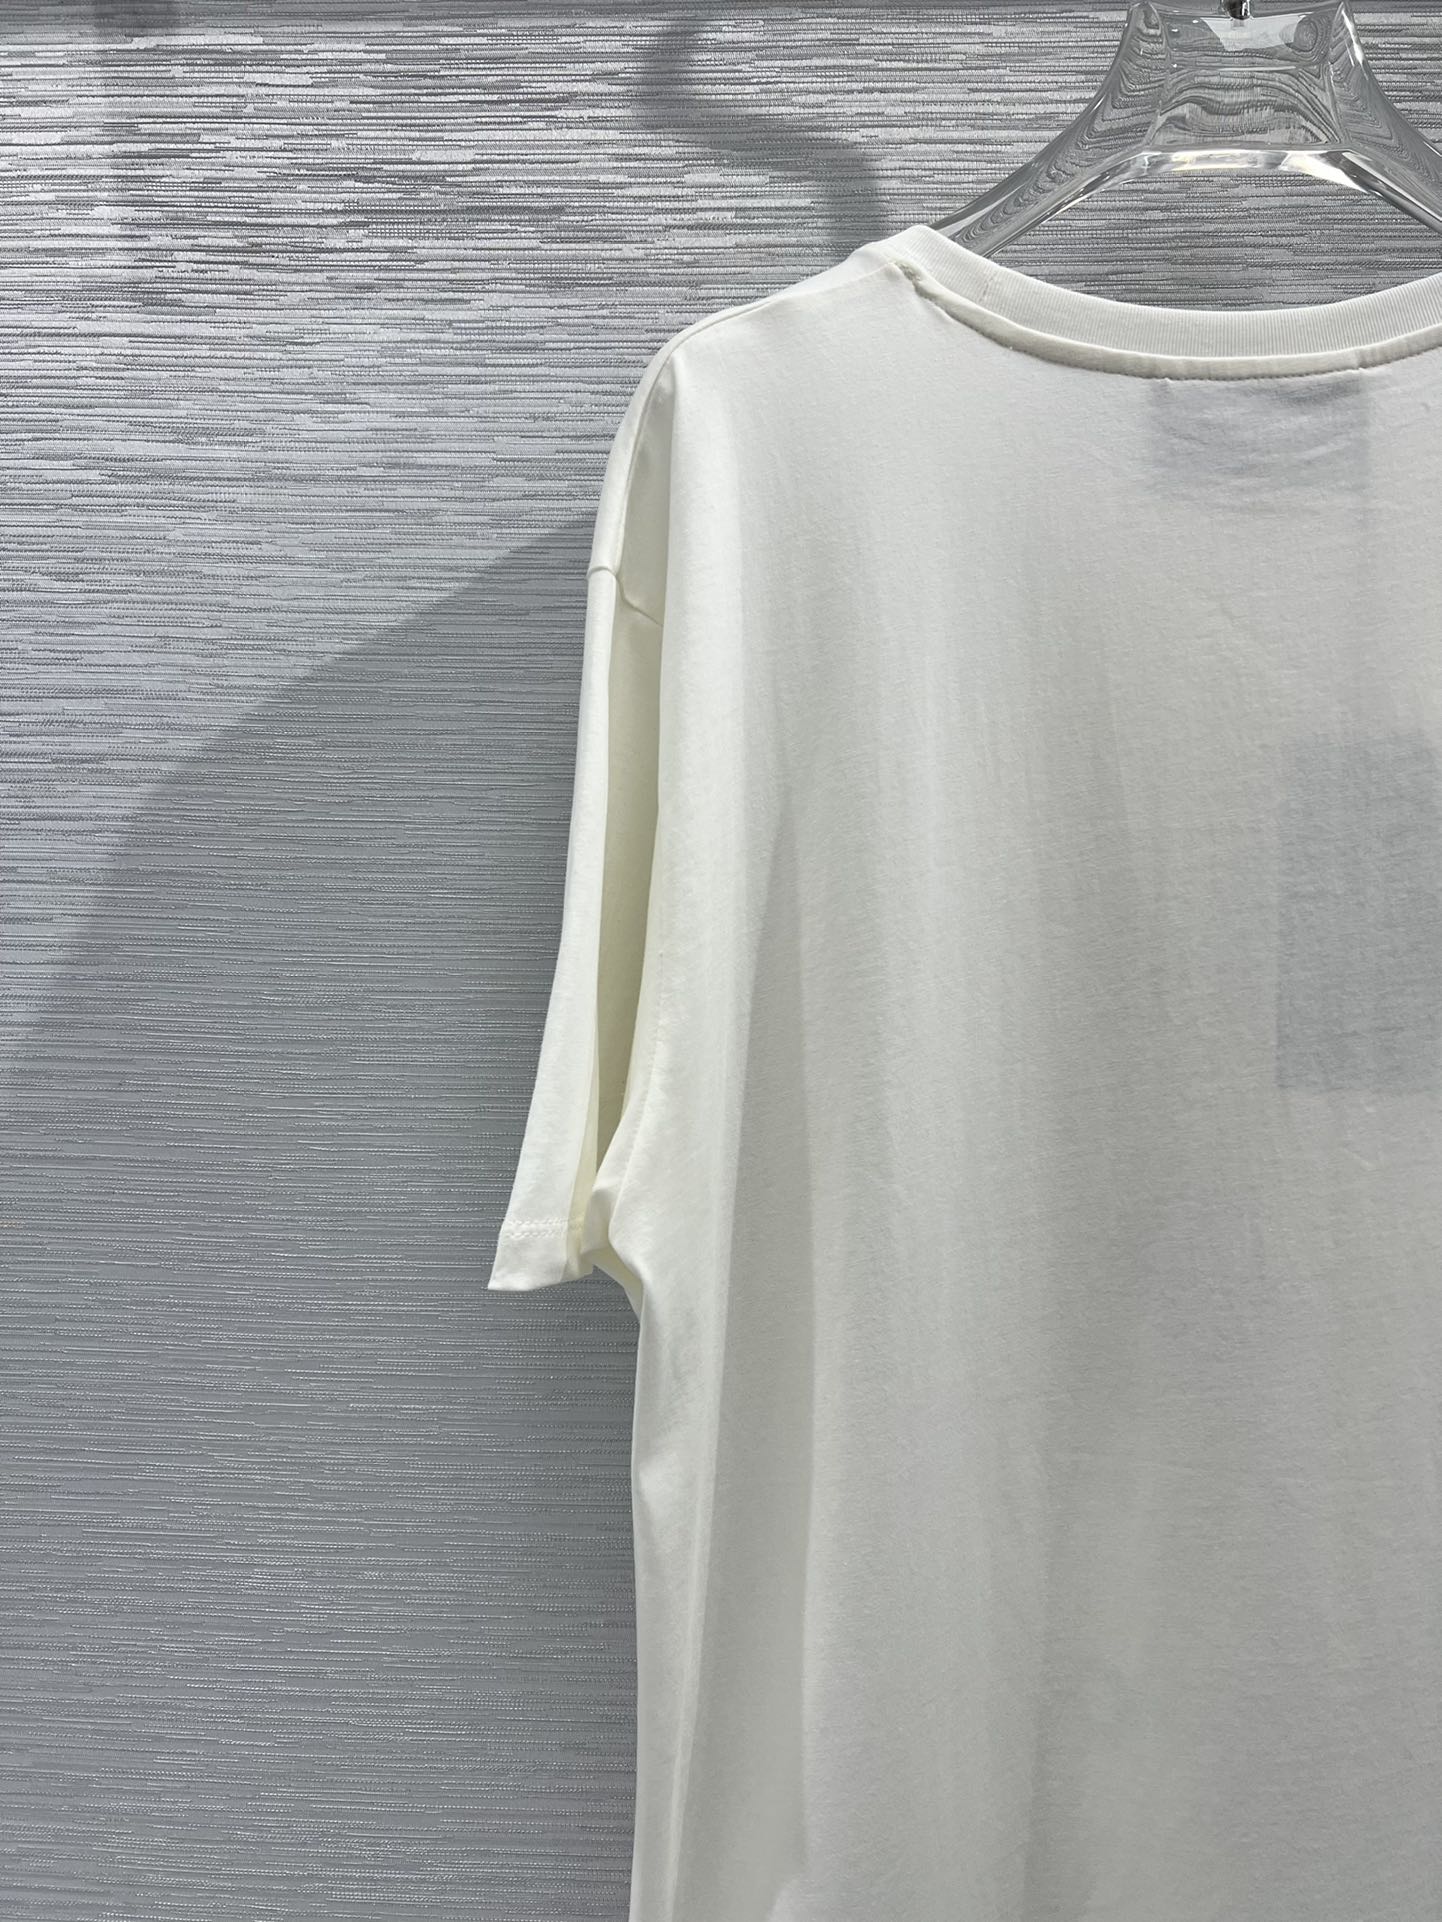 数量限定得価グッチのシャツn級品  プリントTシャツ  コラボkawaiiシリーズ_4